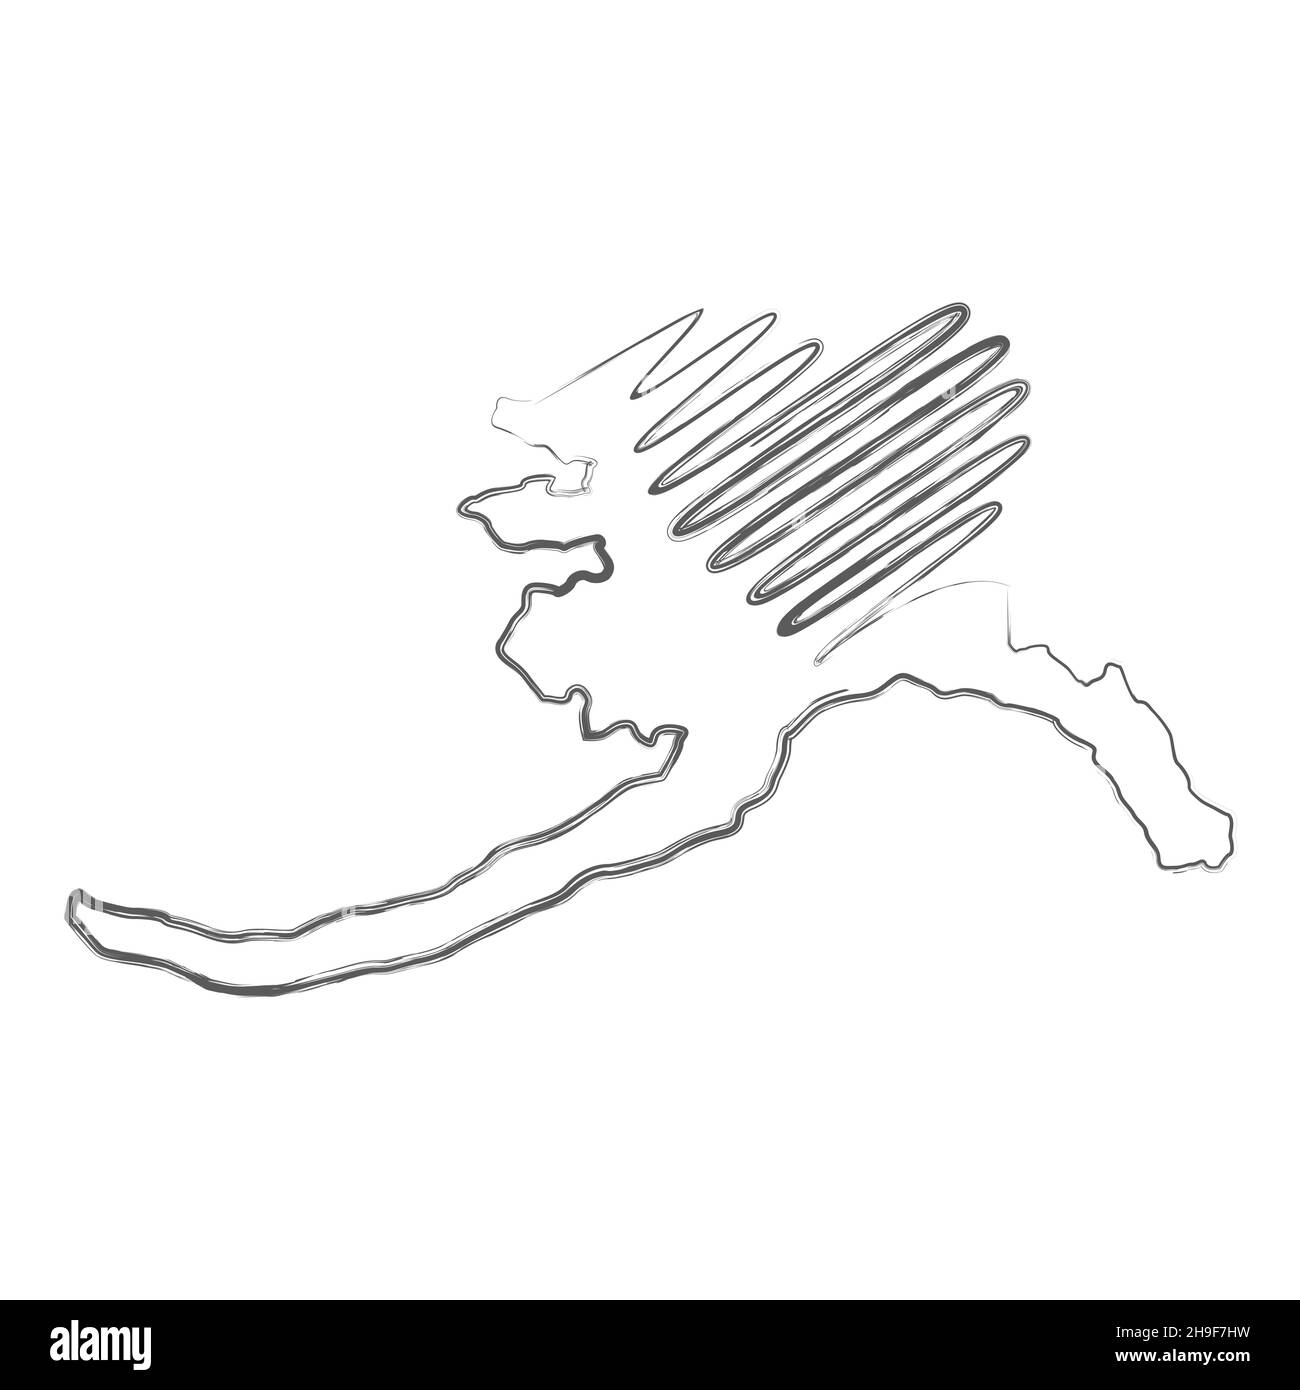 Alaska US State handgezeichnete Skizze Bleistift Umriss Karte mit Herz-Form. Kontinuierliche Linienzeichnung des patriotischen Heimatzeichens. Eine Liebe für eine kleine Heimat. T- Stock Vektor